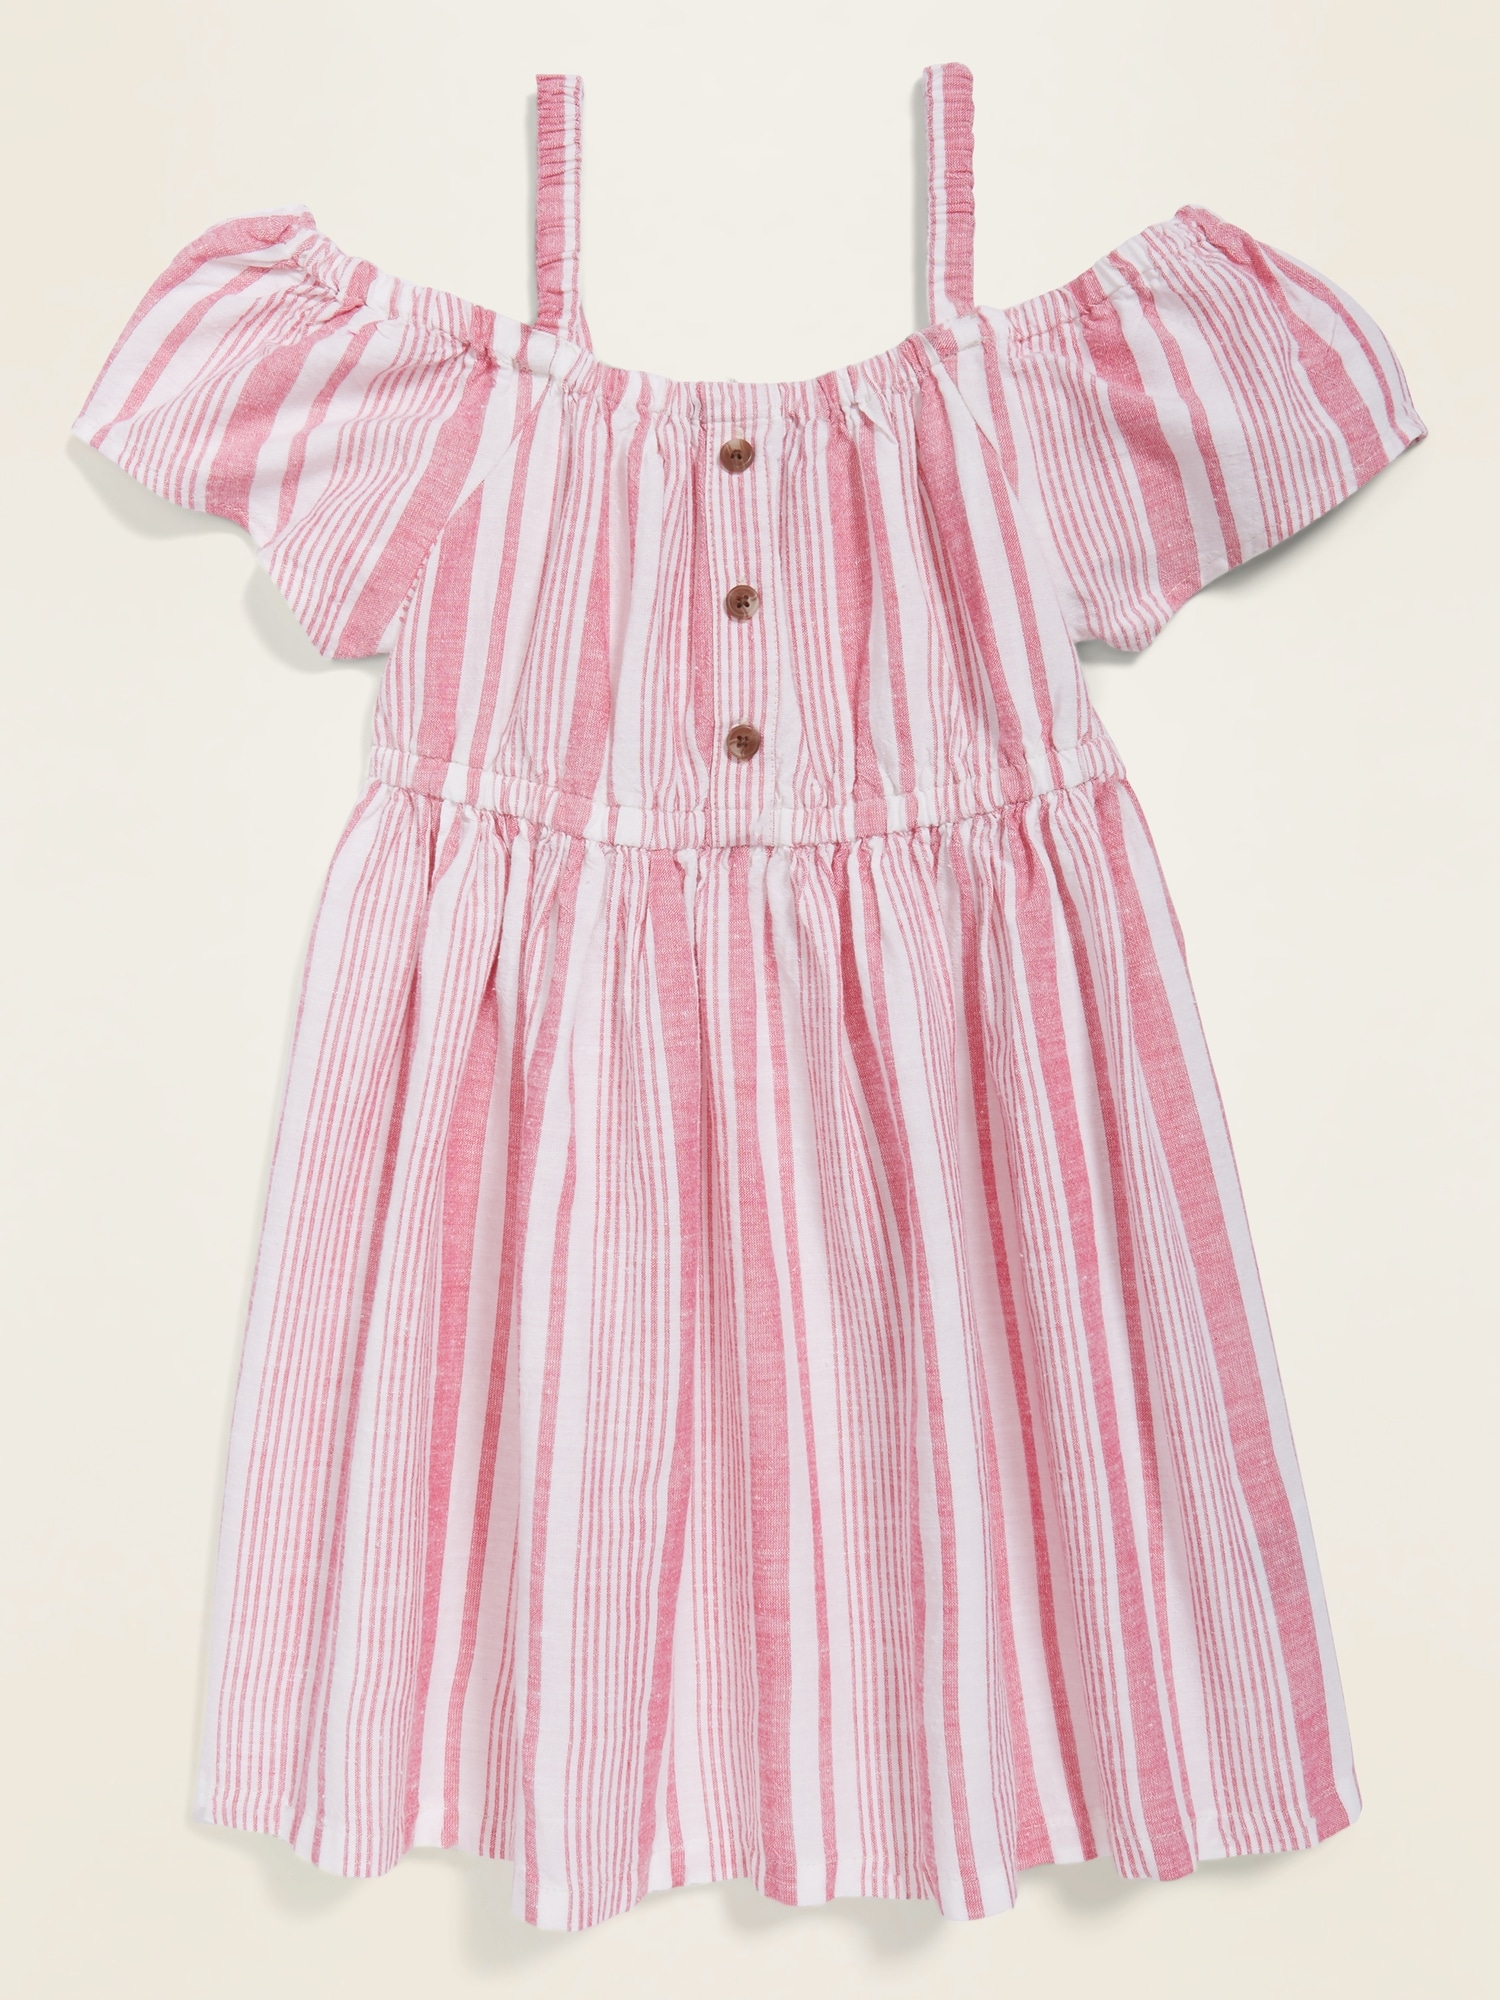 old navy dresses toddler girl